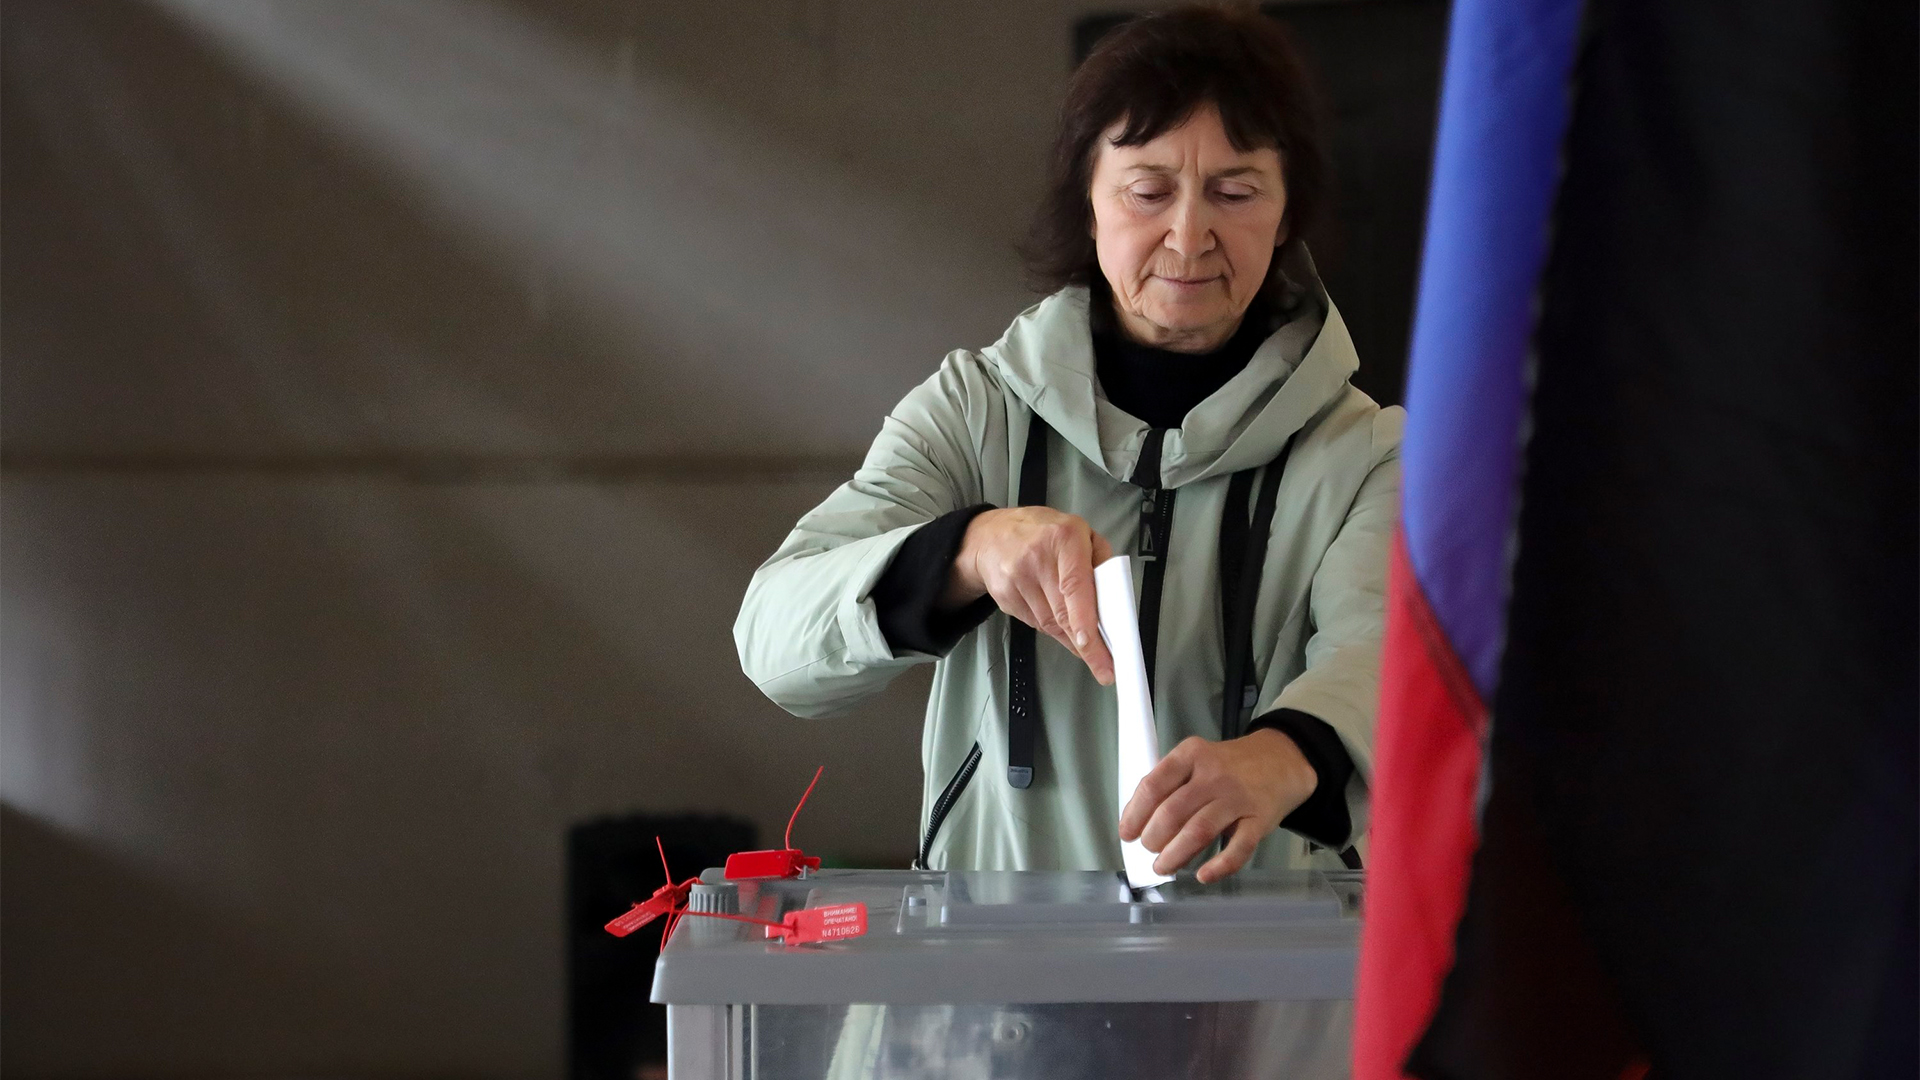 Eine Frau wirft ihren Stimmzettel in eine verschlossene Box.